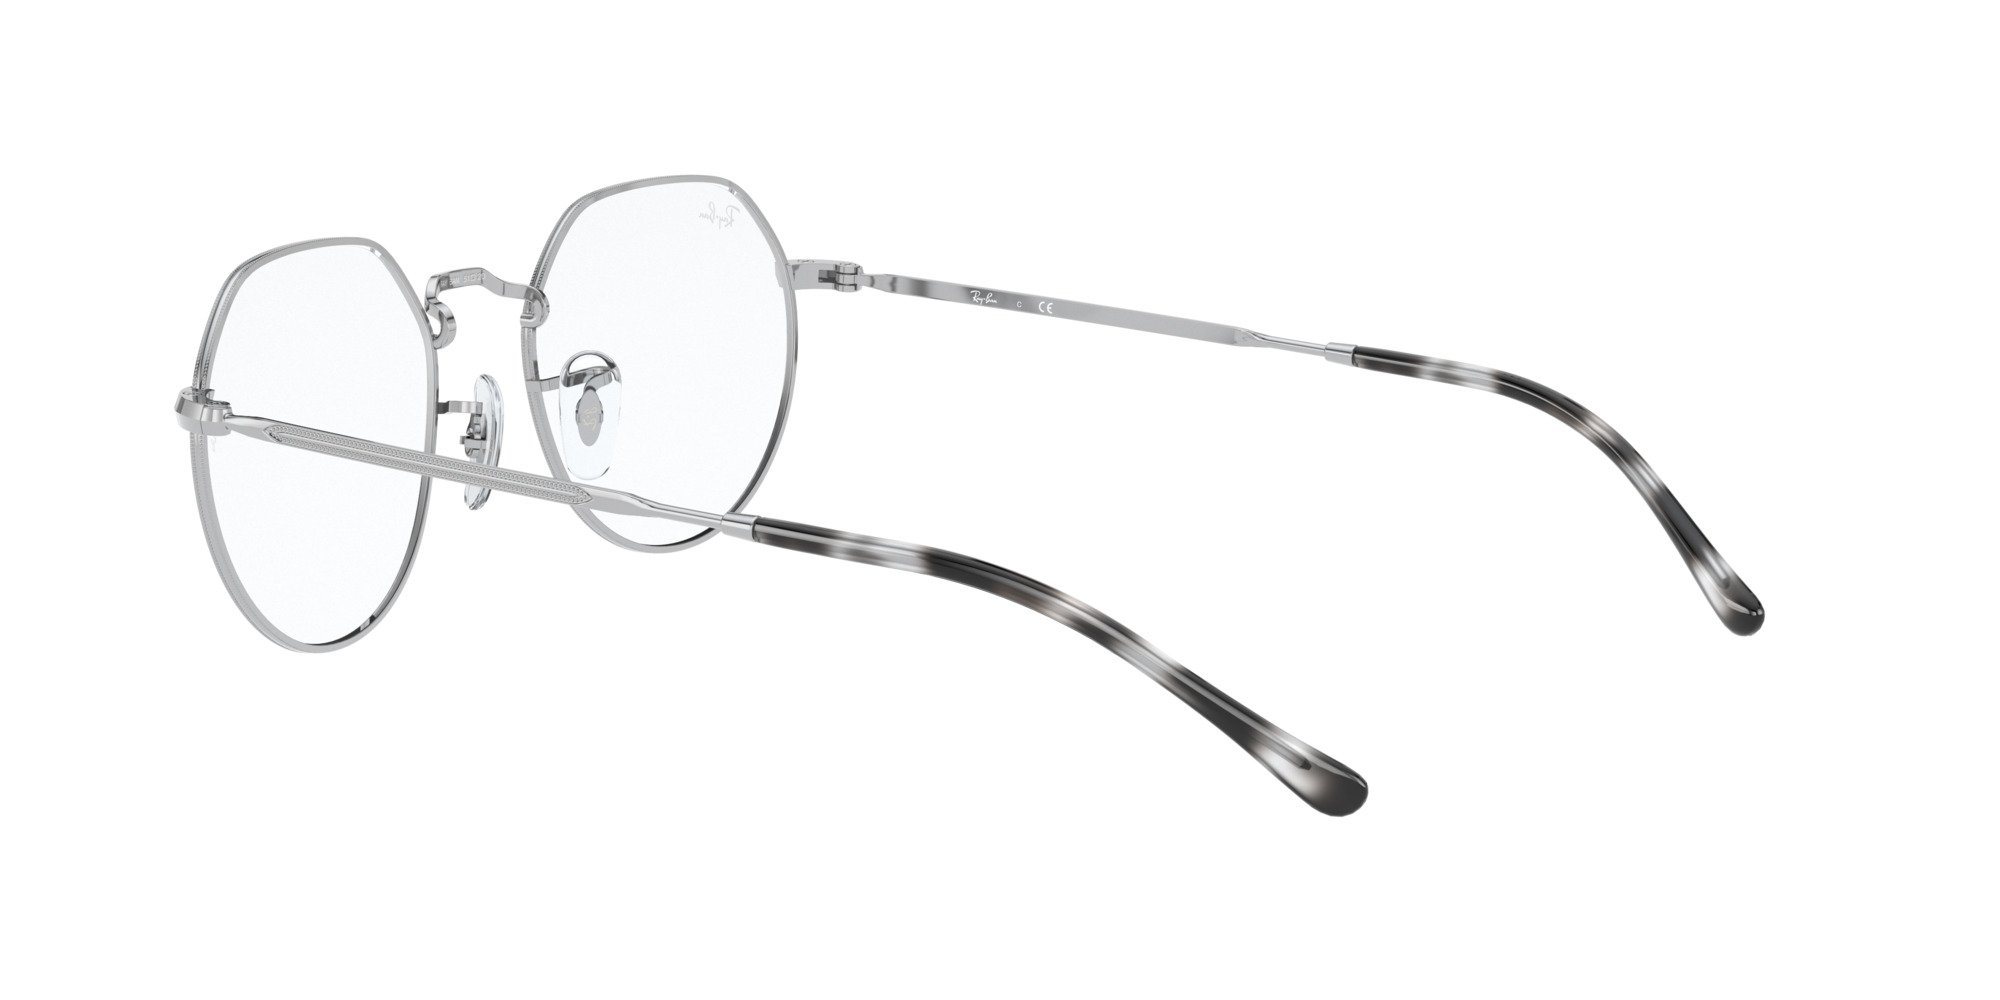 Das Bild zeigt die Korrektionsbrille RX6564 2501 von der Marke Ray Ban in Silber.